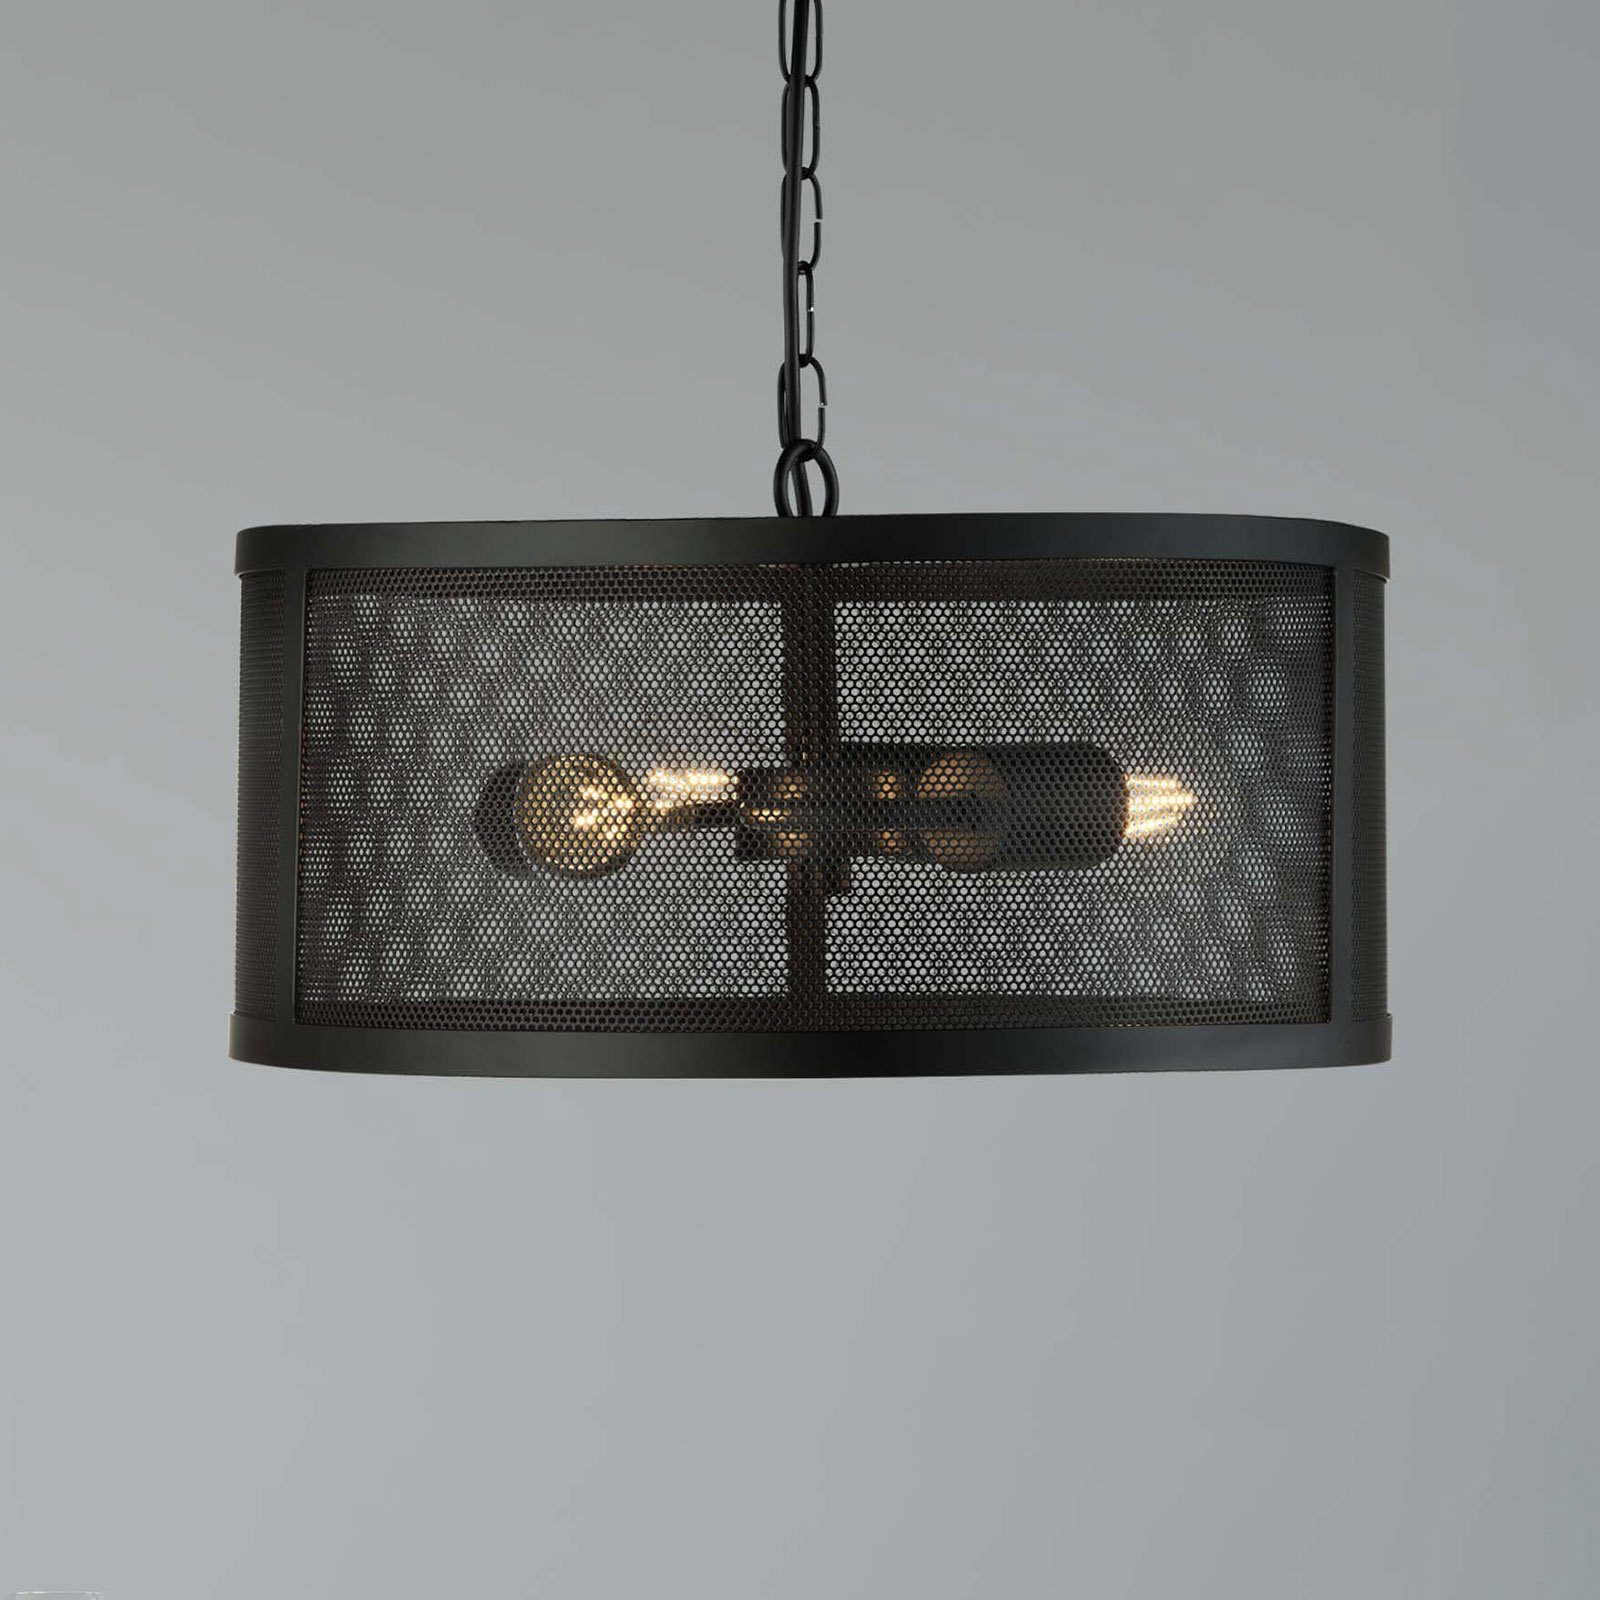 Kovinsko viseče svetilo Fishnet v črni barvi Ø 45 cm